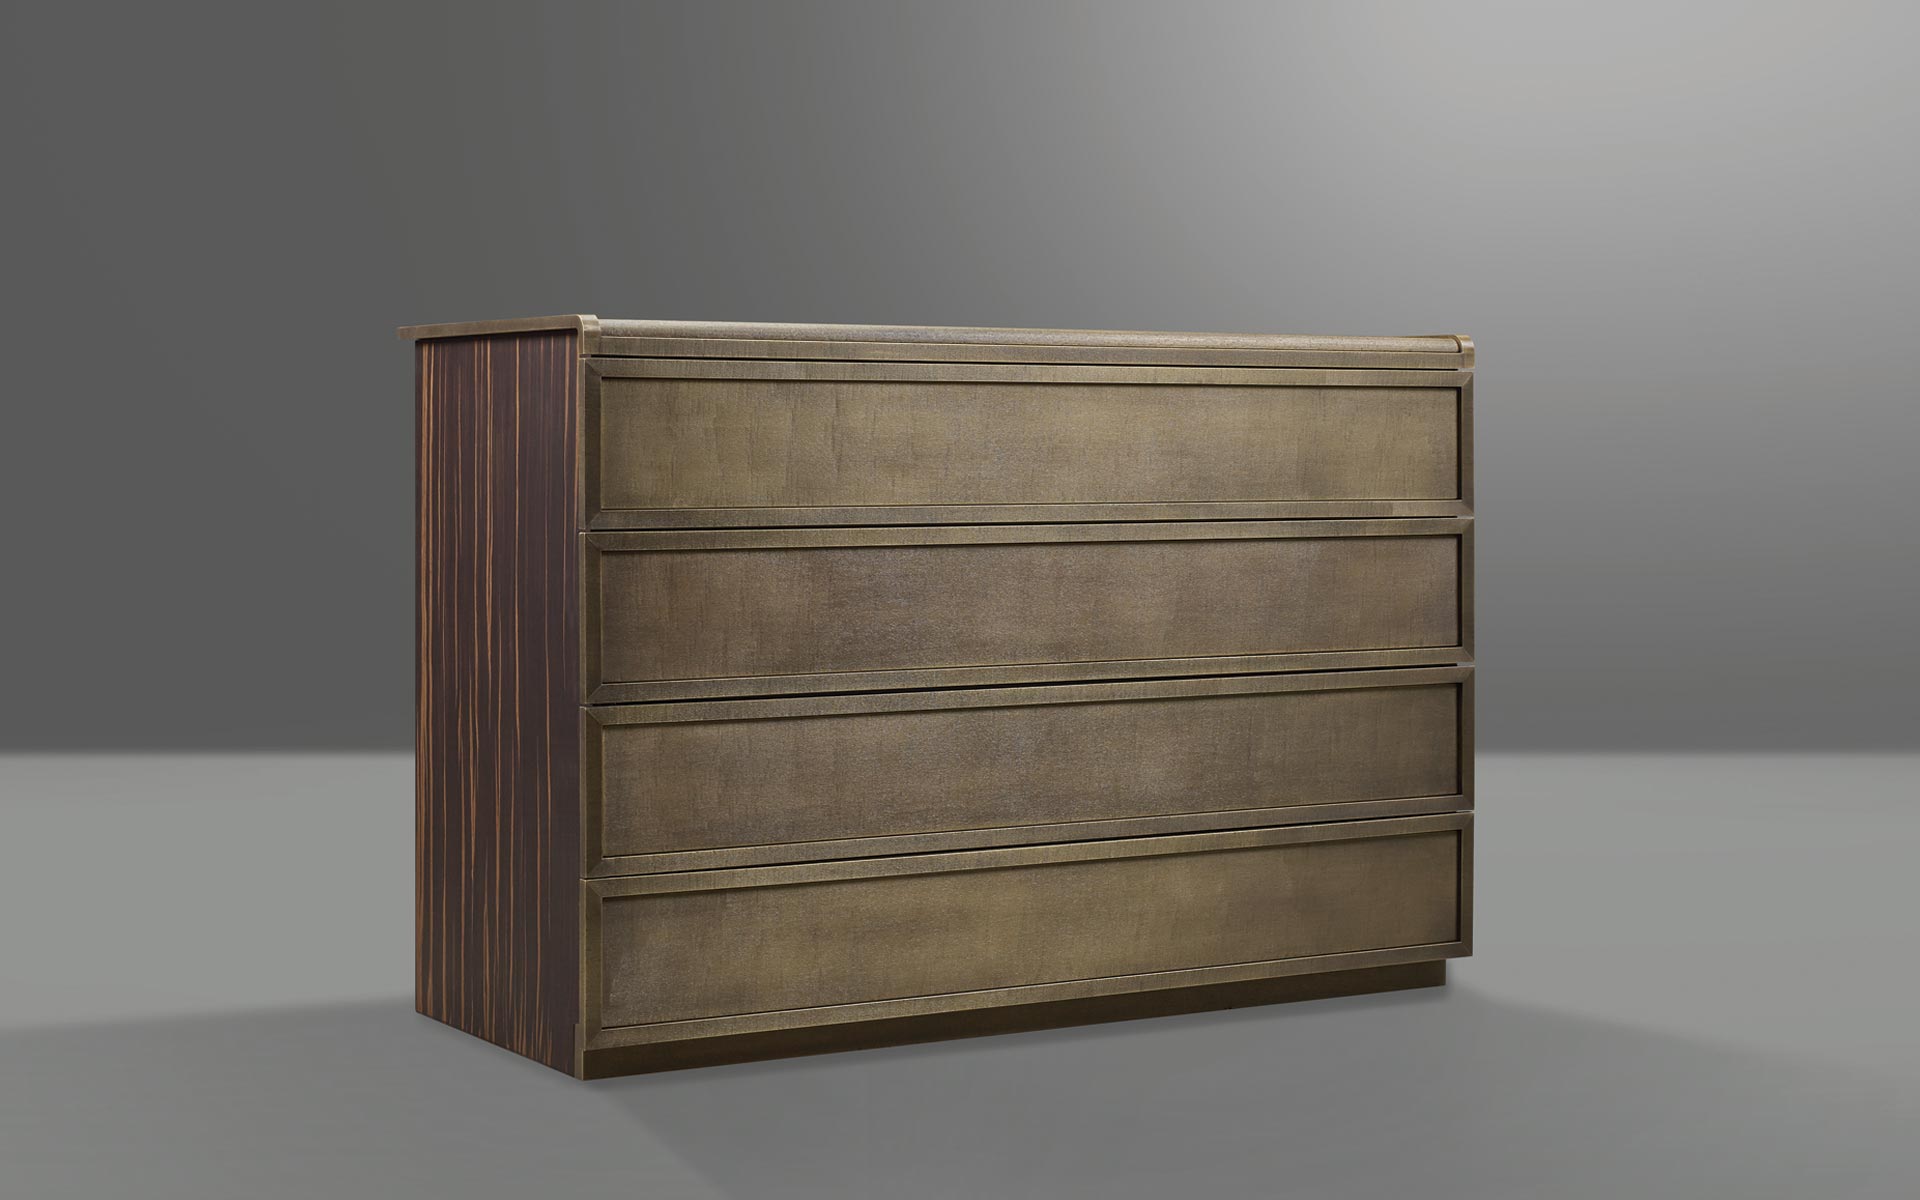 Orione è una cassettiera in legno rivestita in pelle, del catalogo di Promemoria | Promemoria